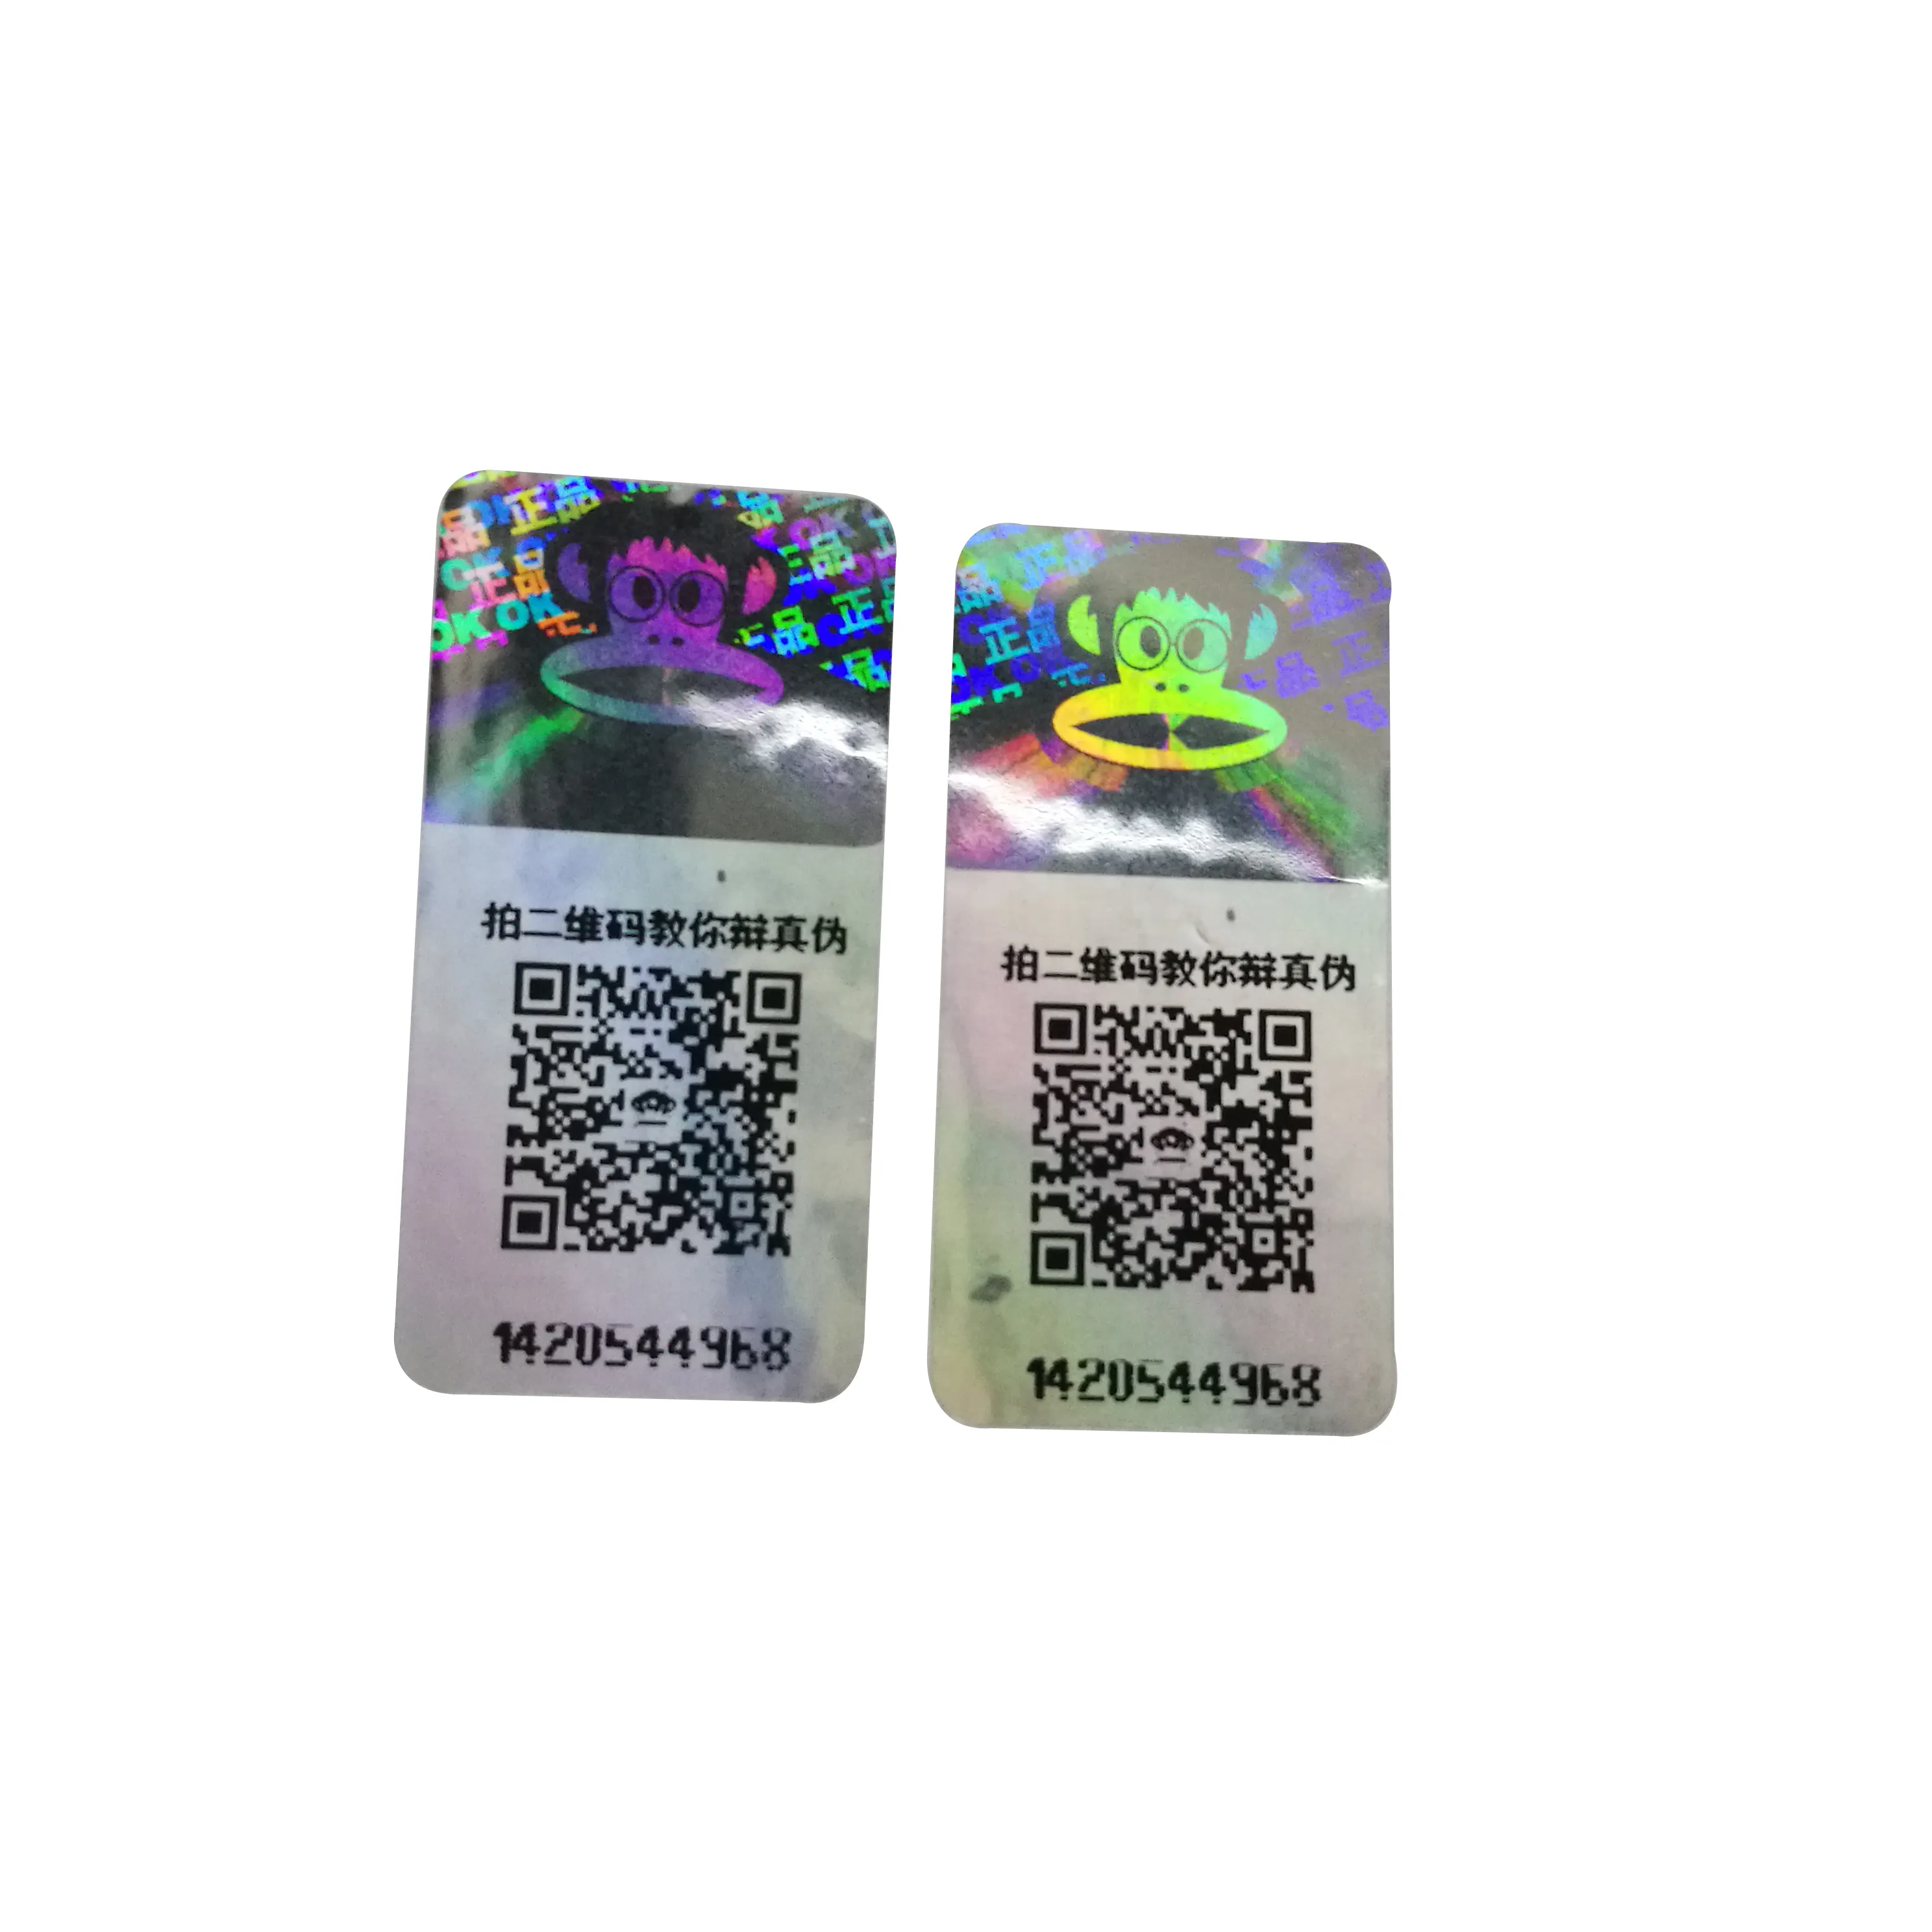 รหัส QR หมายเลขซีเรียลสีเงิน3D ผลแบบไดนามิกฉลากสติกเกอร์โฮโลแกรม